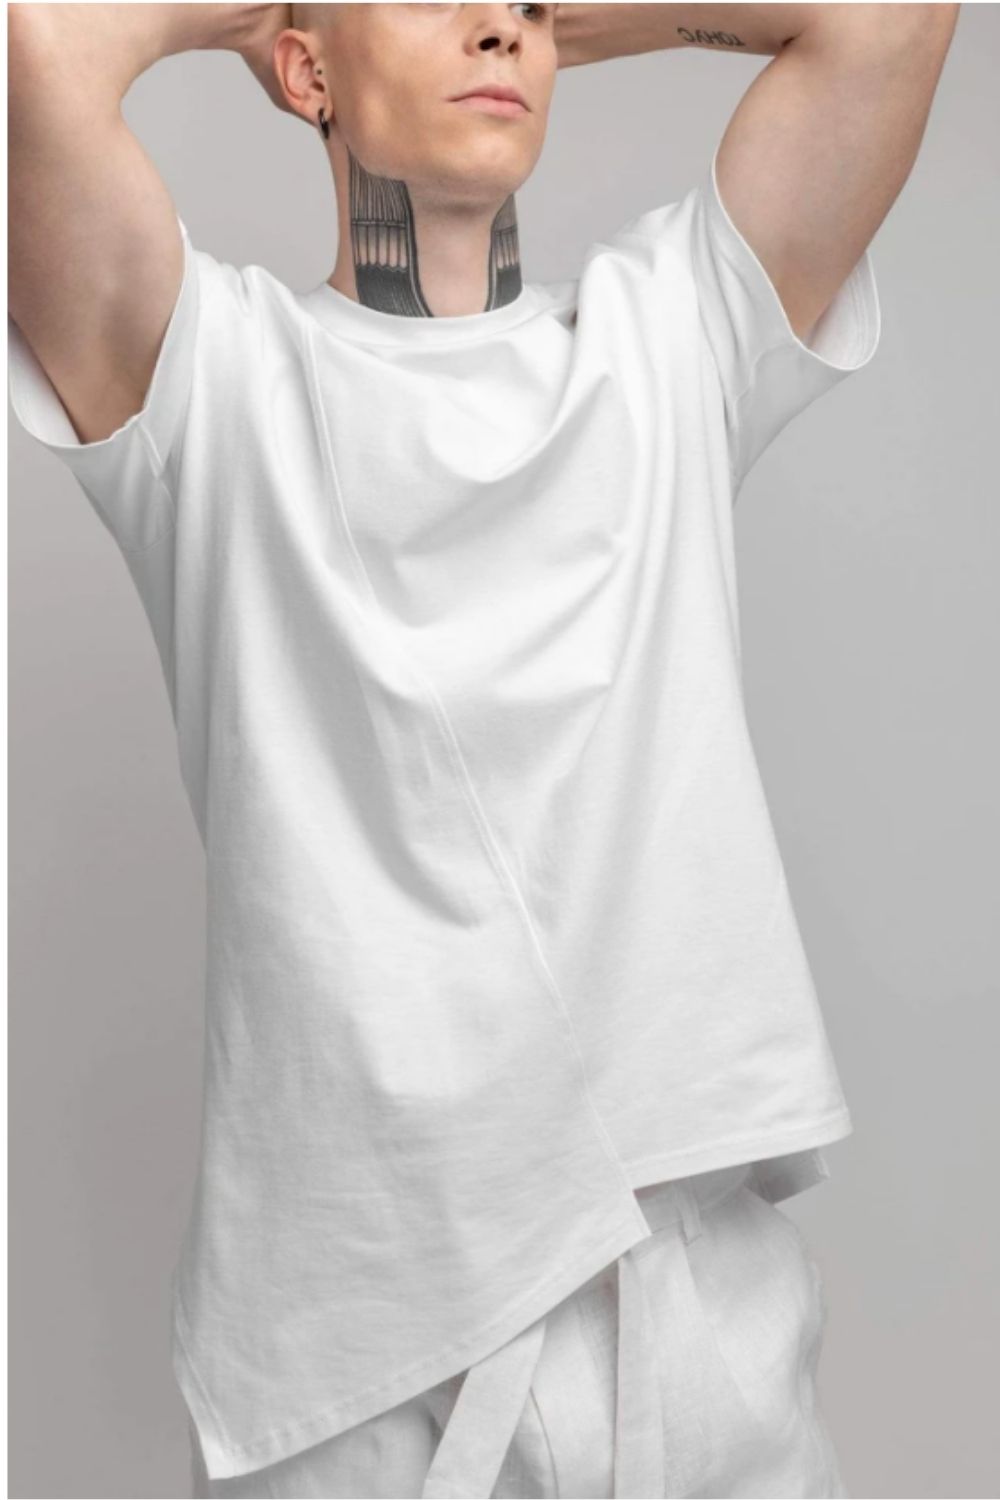 Asymmetric T-shirt White